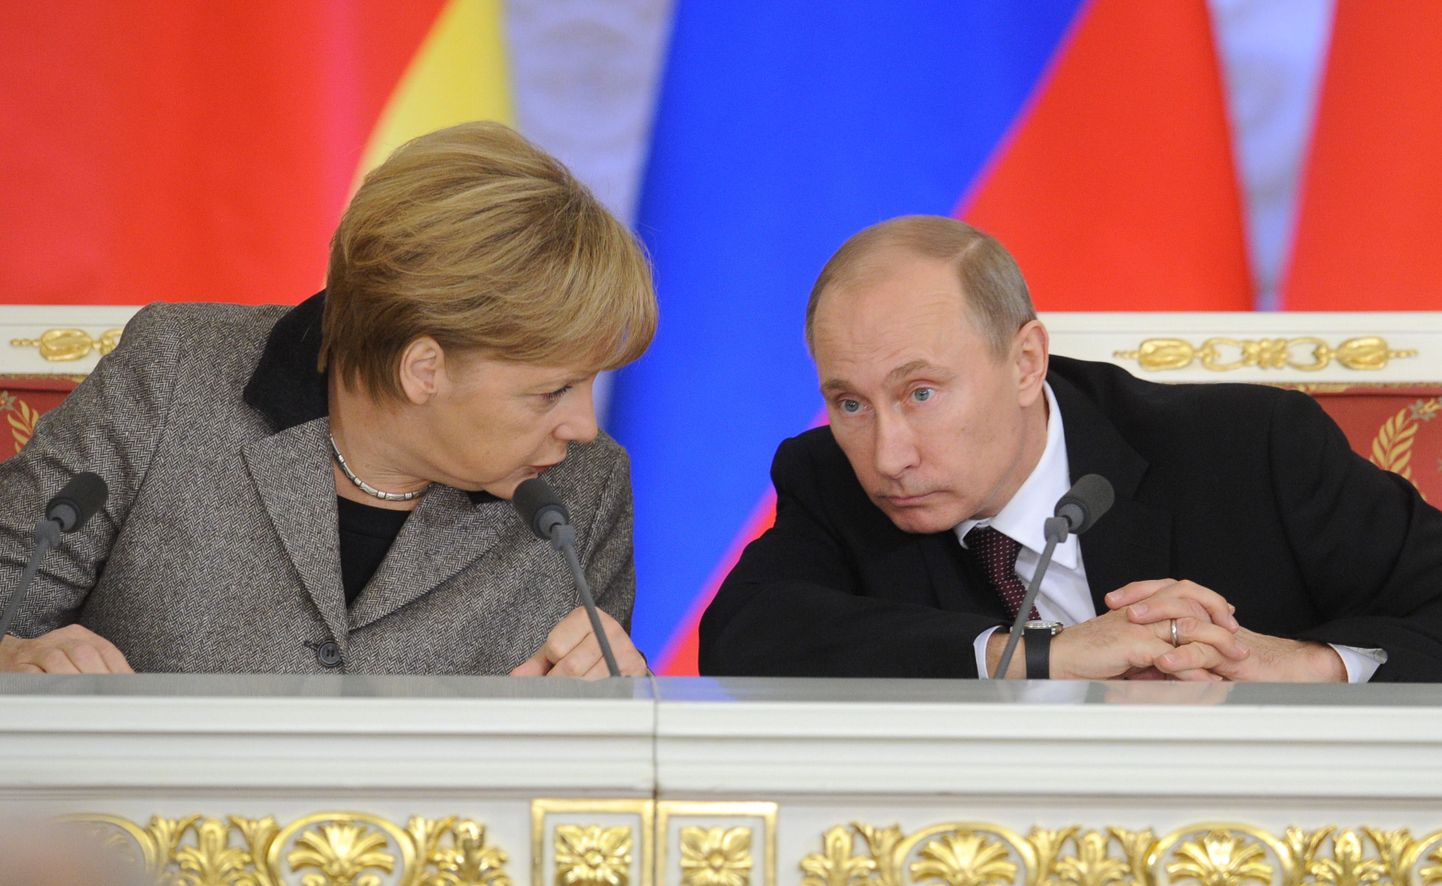 Angela Merkel ja Vladimir Putin kohtusid eelmisel nädalal Moskvas. Kantseler Merkel väljendas seal nõutust Pussy Rioti liikmetele määratud karistuse üle.